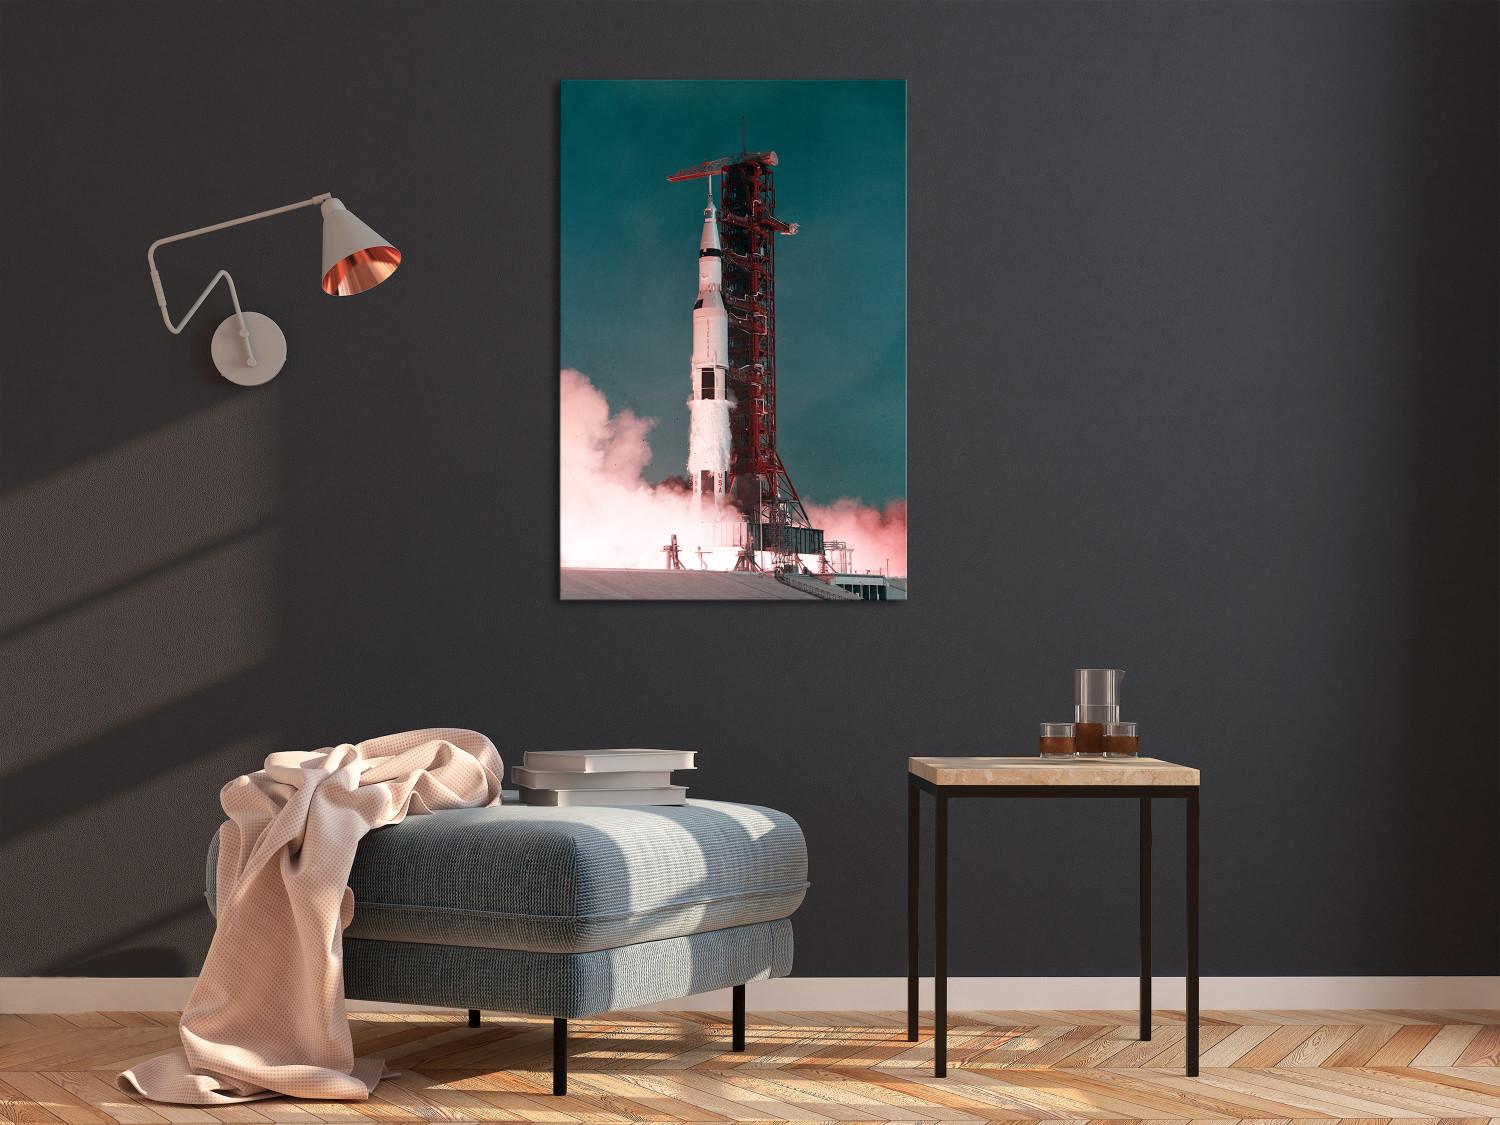 Cuadro decorativo Lanzamiento del cohete - foto del cohete lanzando al espacio